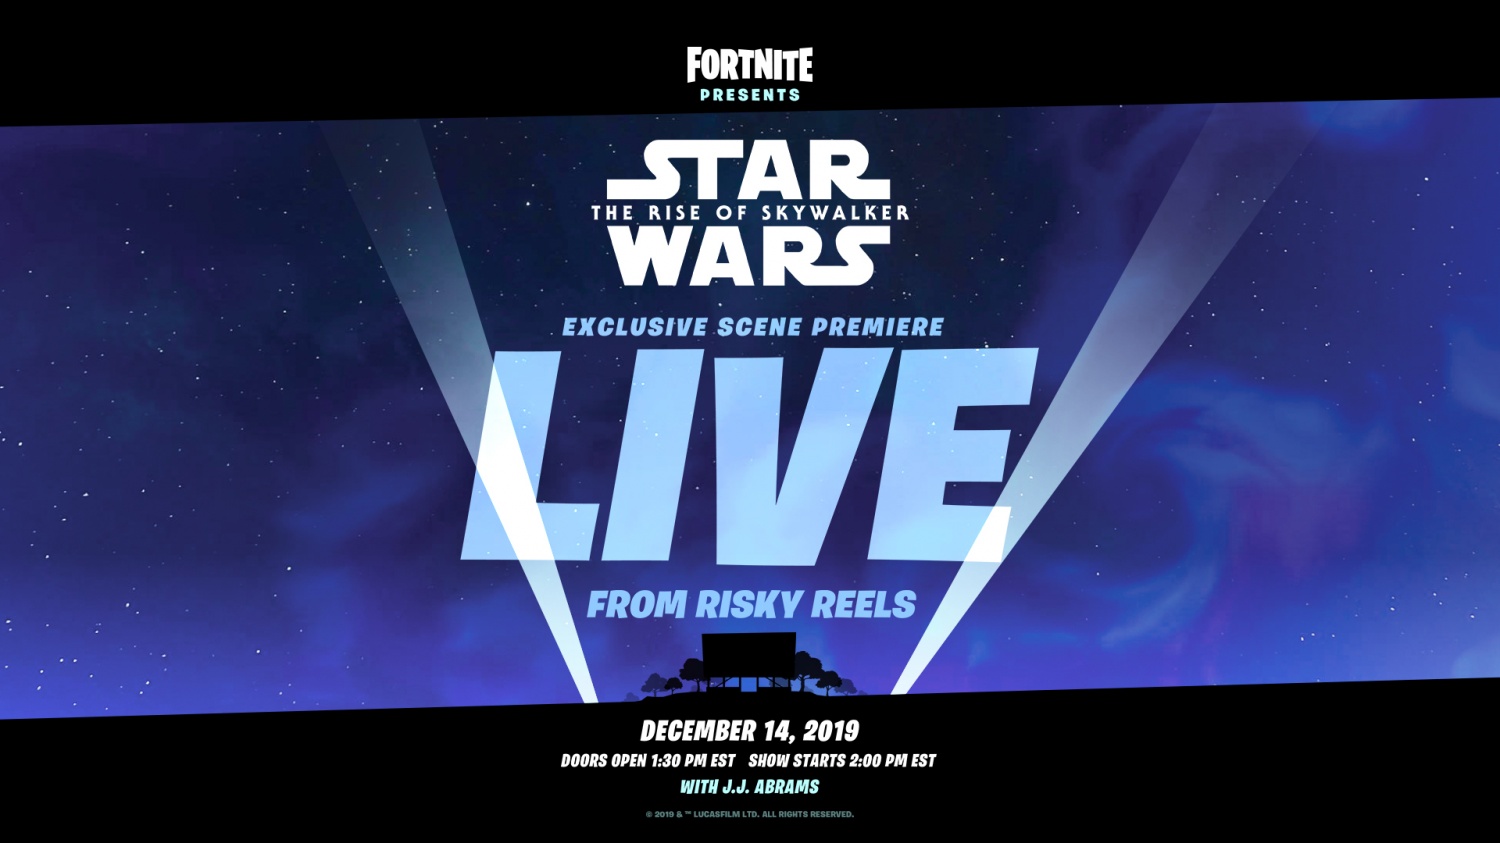 Star Wars Live in Fortnite!